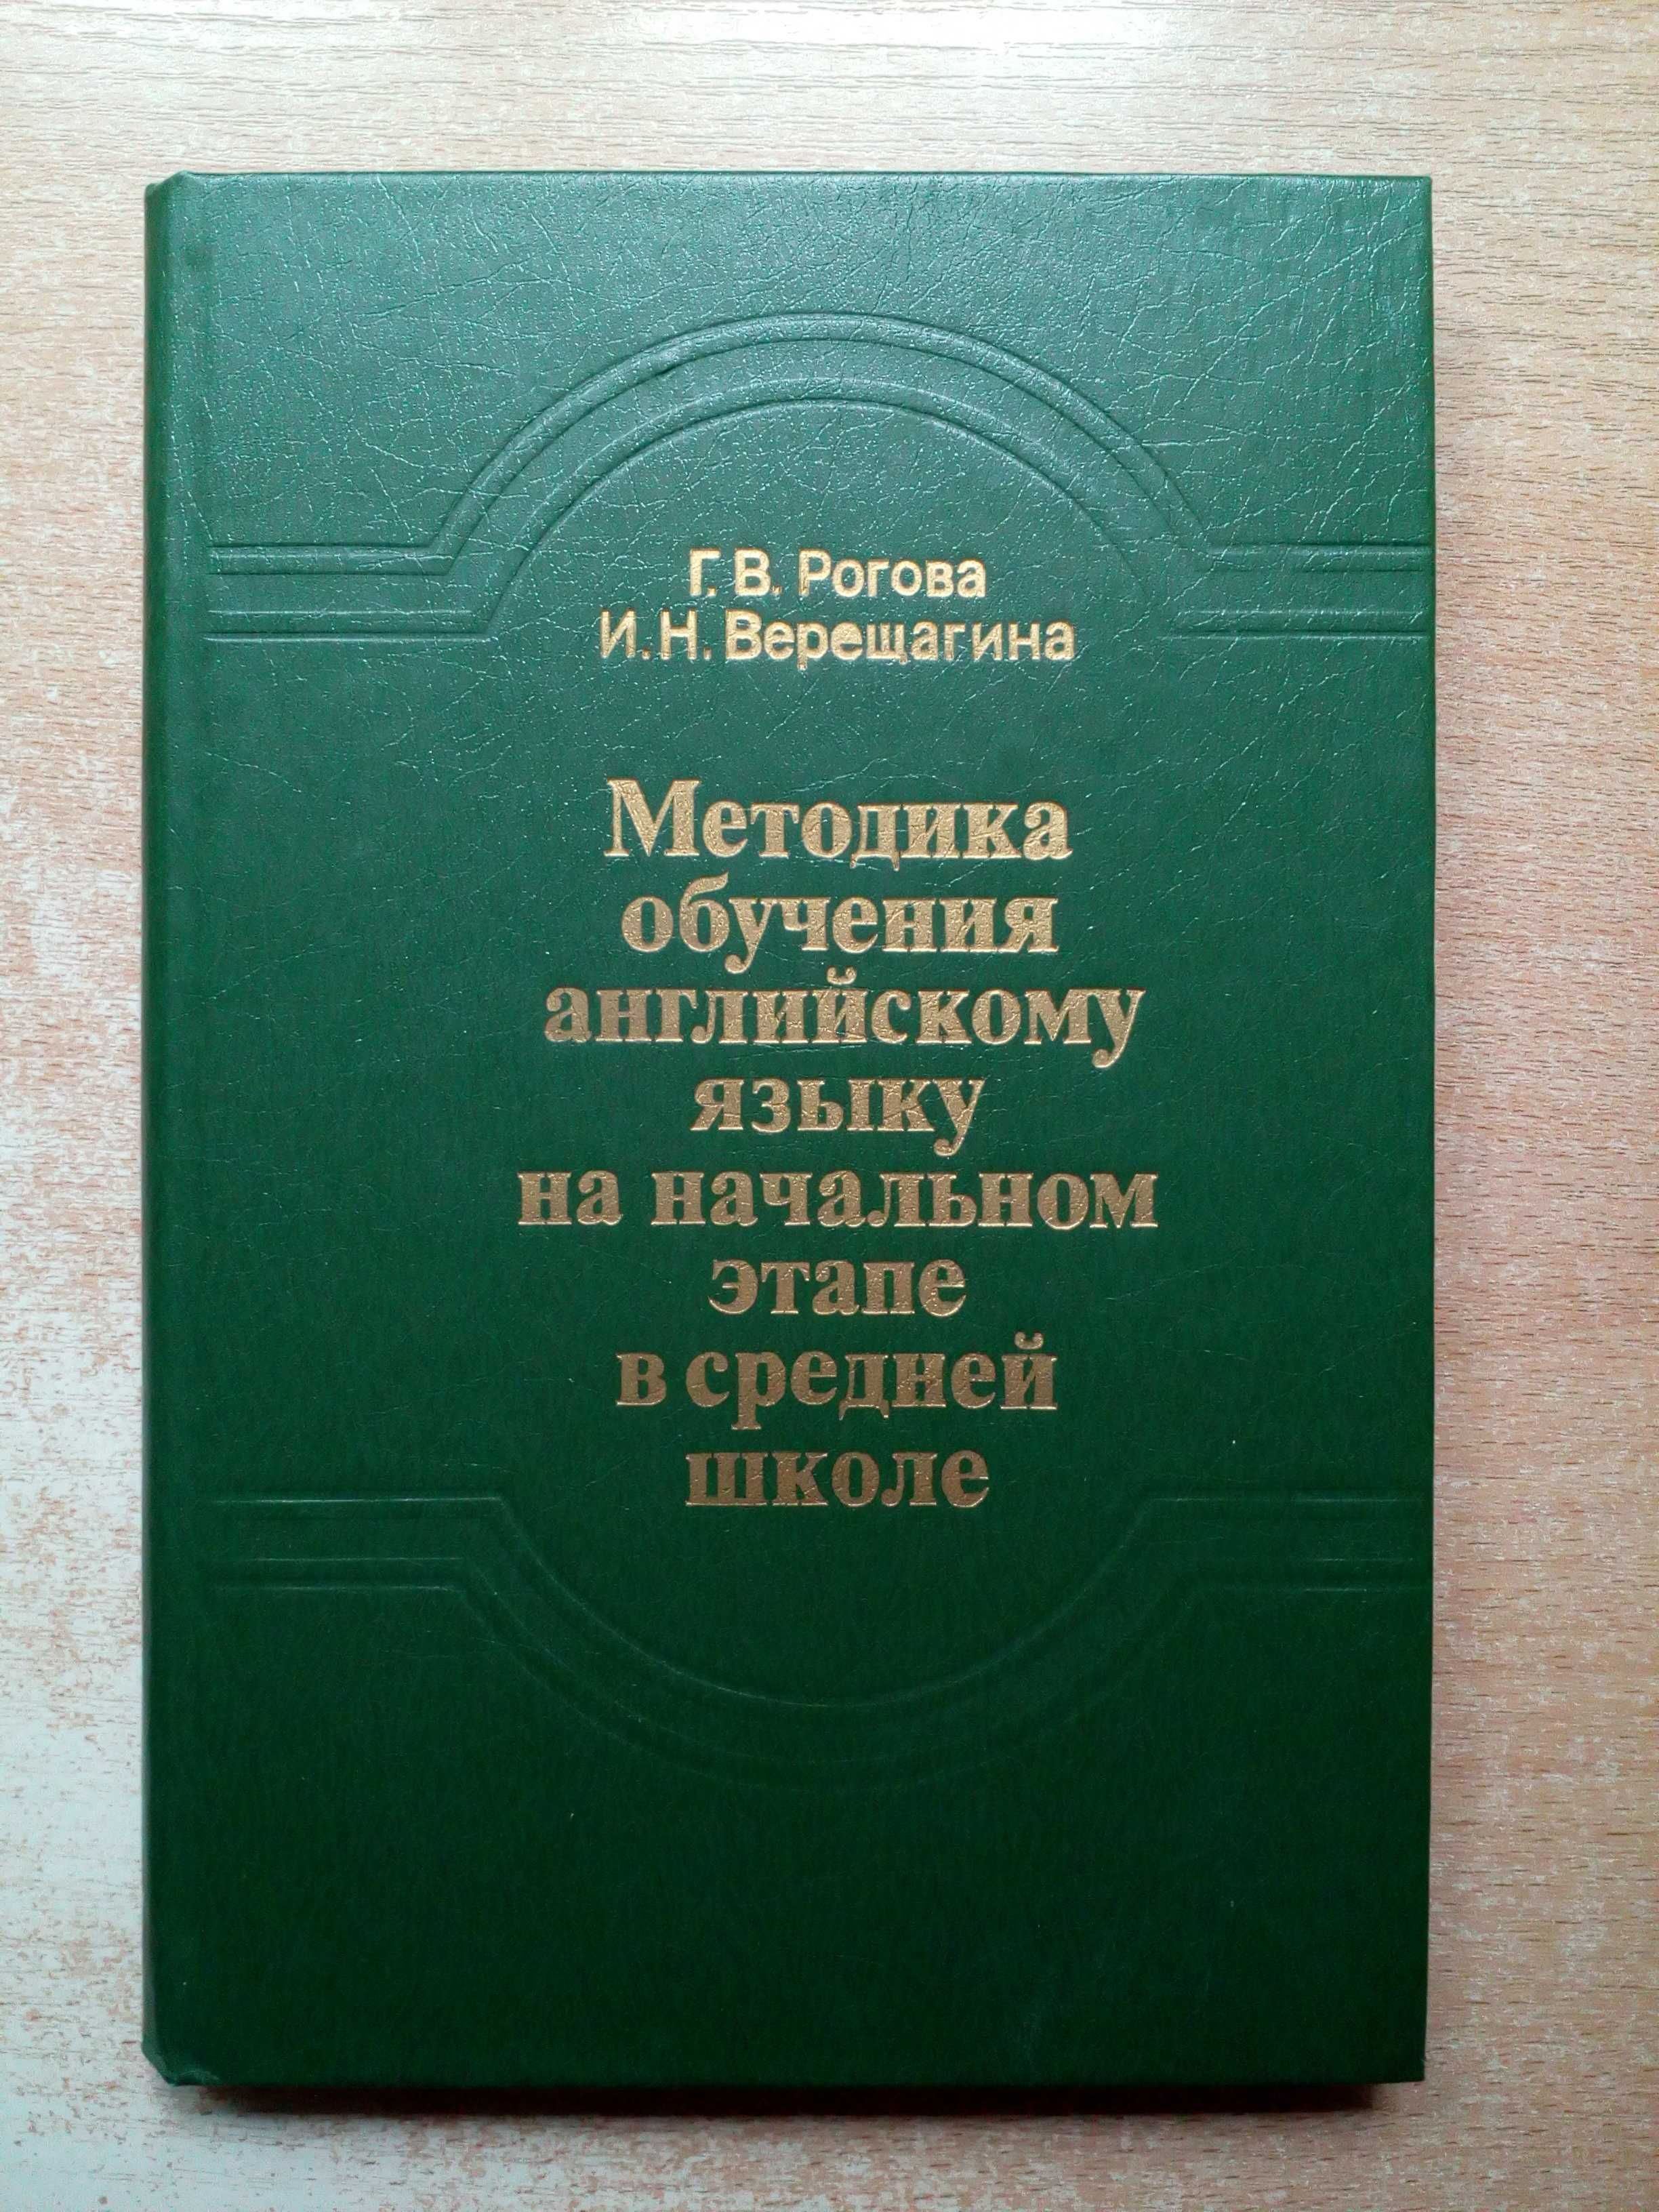 Рогова,Верещагина"Методика обучения английскому языку".